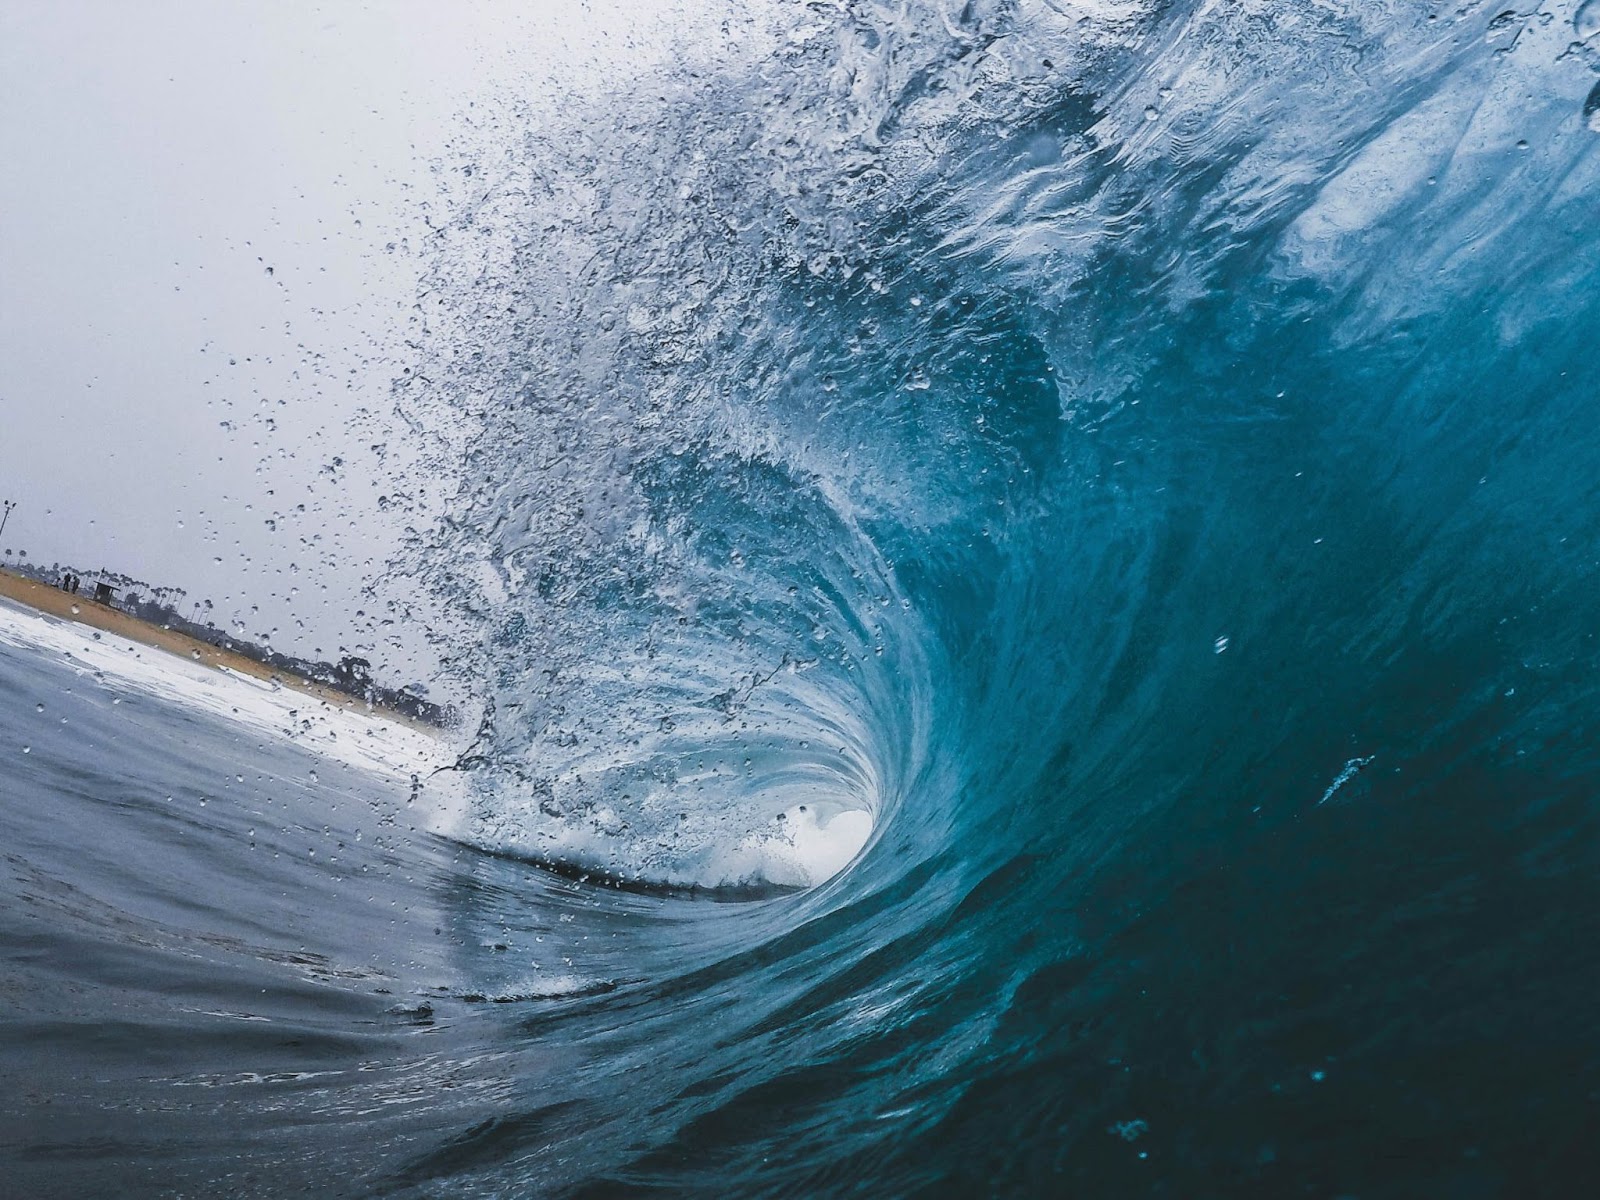 La curvatura di un'onda blu cristallina che si infrange verso la costa,con la cresta che spruzzaacqua.